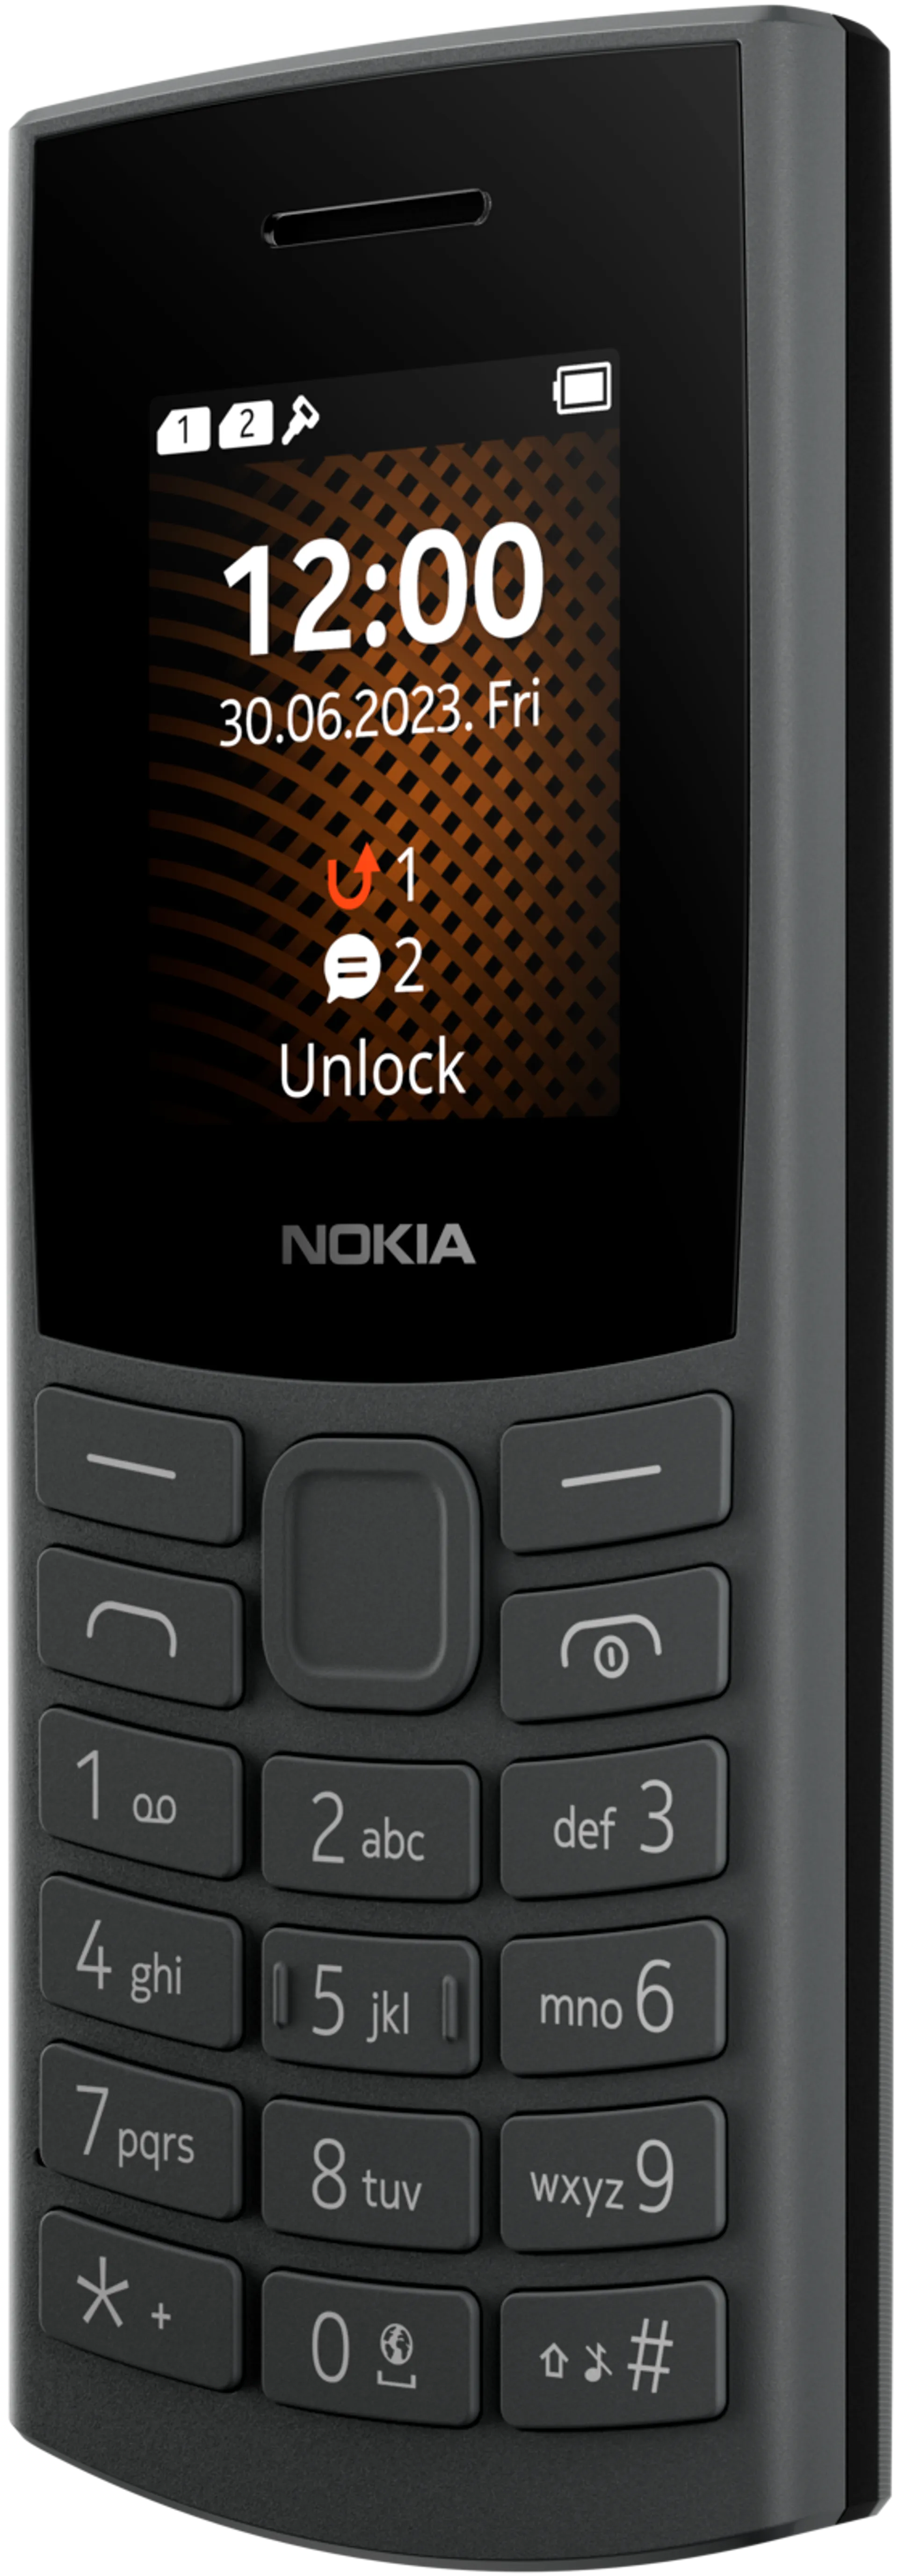 Nokia 105 4G peruspuhelin hiilenharmaa - 4